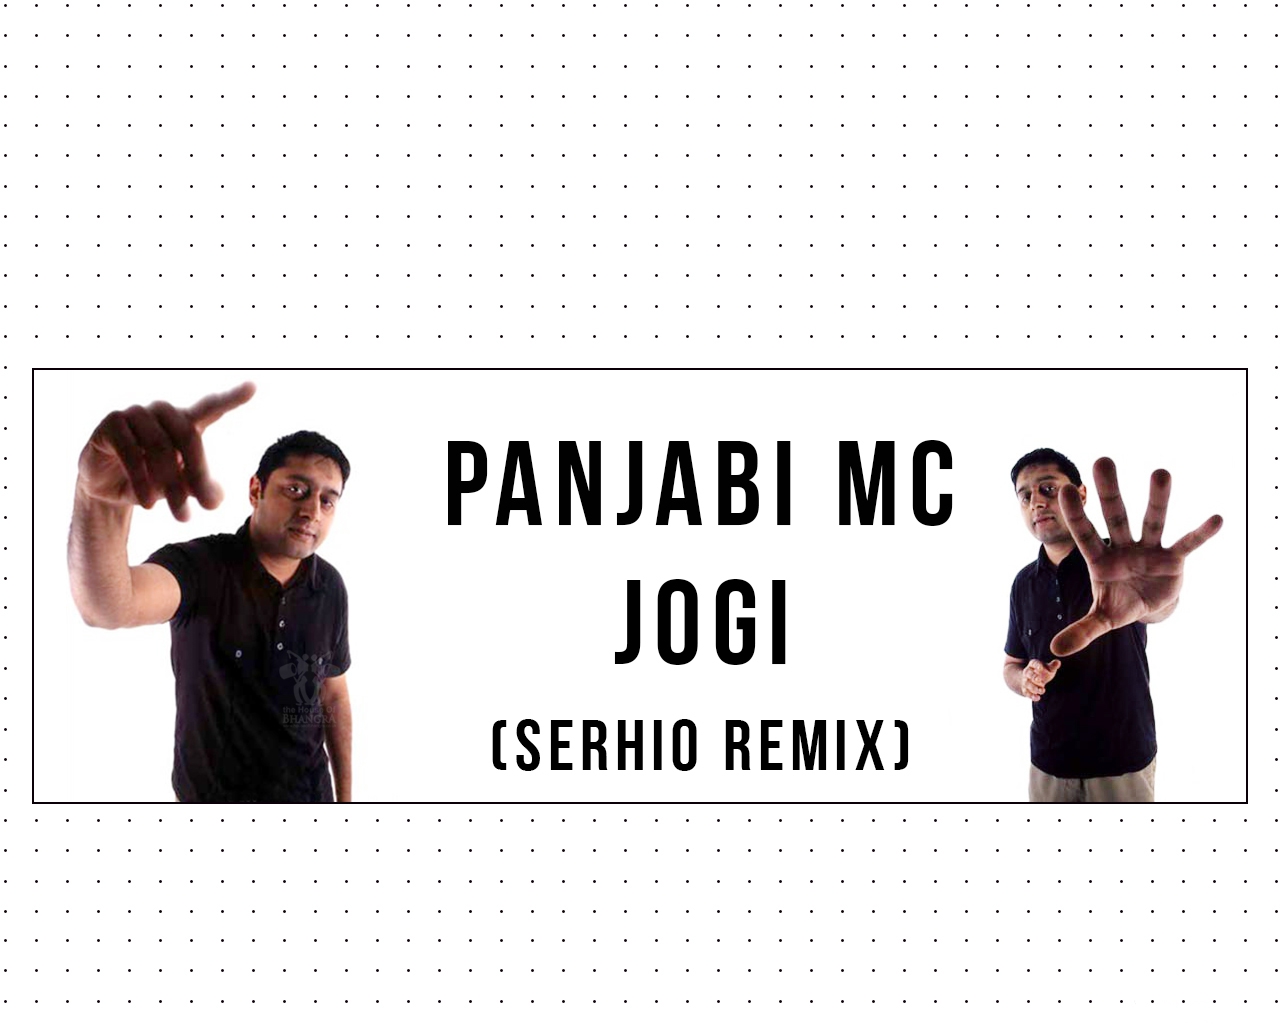 Panjabi mc слушать. Jogi Panjabi. Panjabi MC Jogi. Jogi (Panjabi MC Song). Panjabi MC Jogi 2003 German.